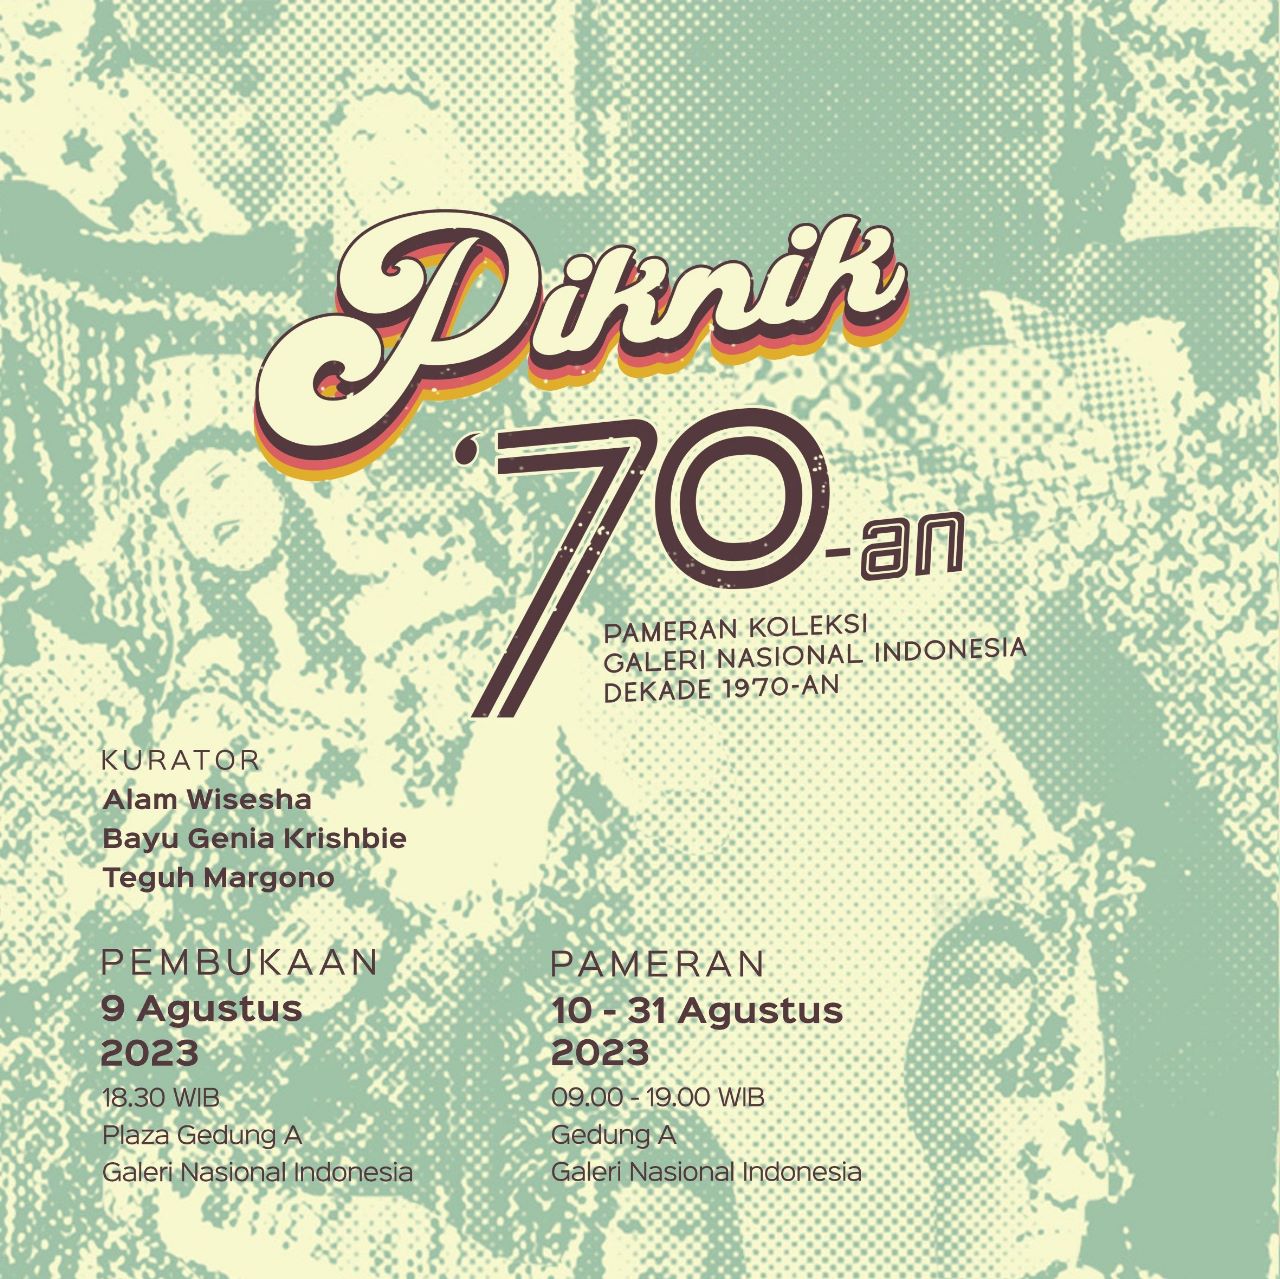 GALNAS dan ANRI Kolaborasi dalam Pameran Bertajuk "Piknik 70-an"